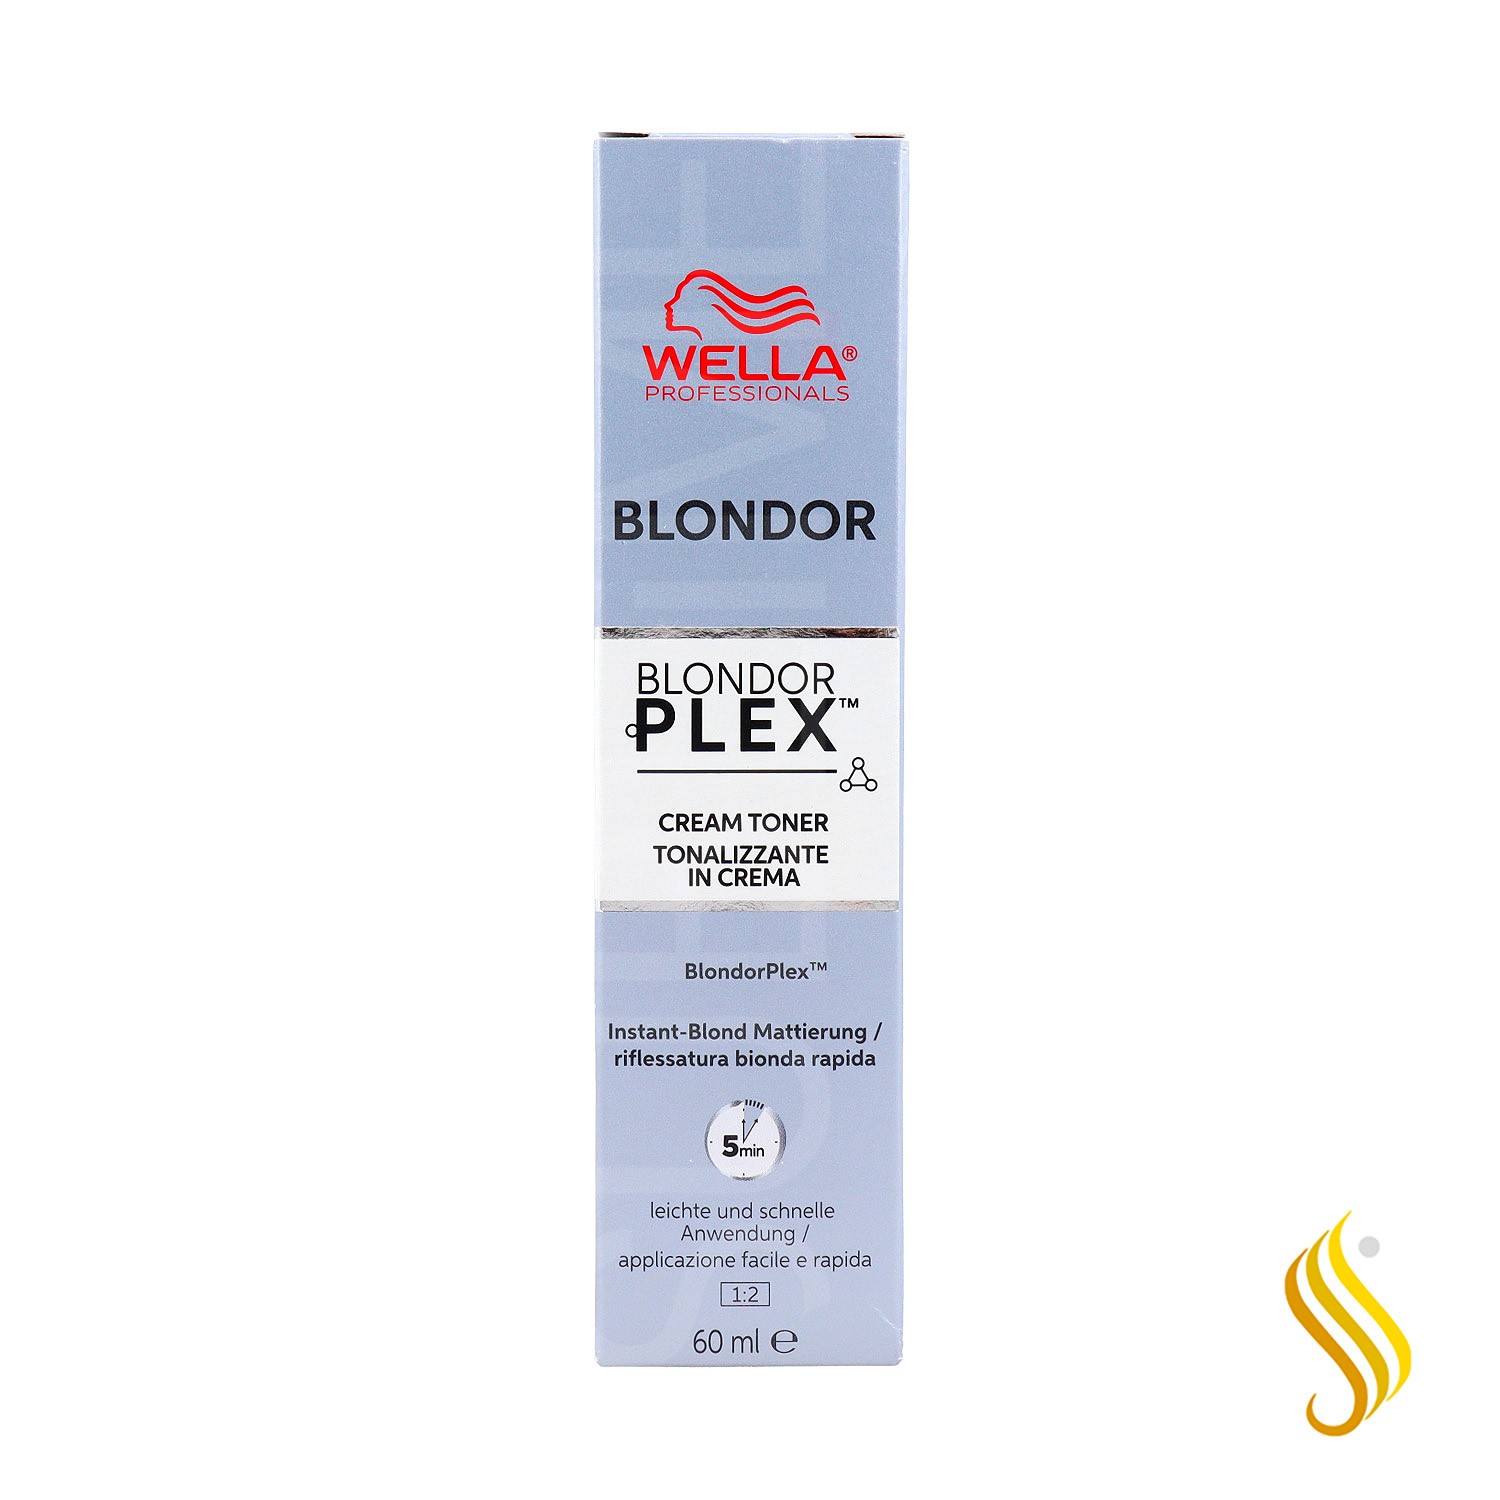 Wella Blondor Plex Cream Toner /81 60ml